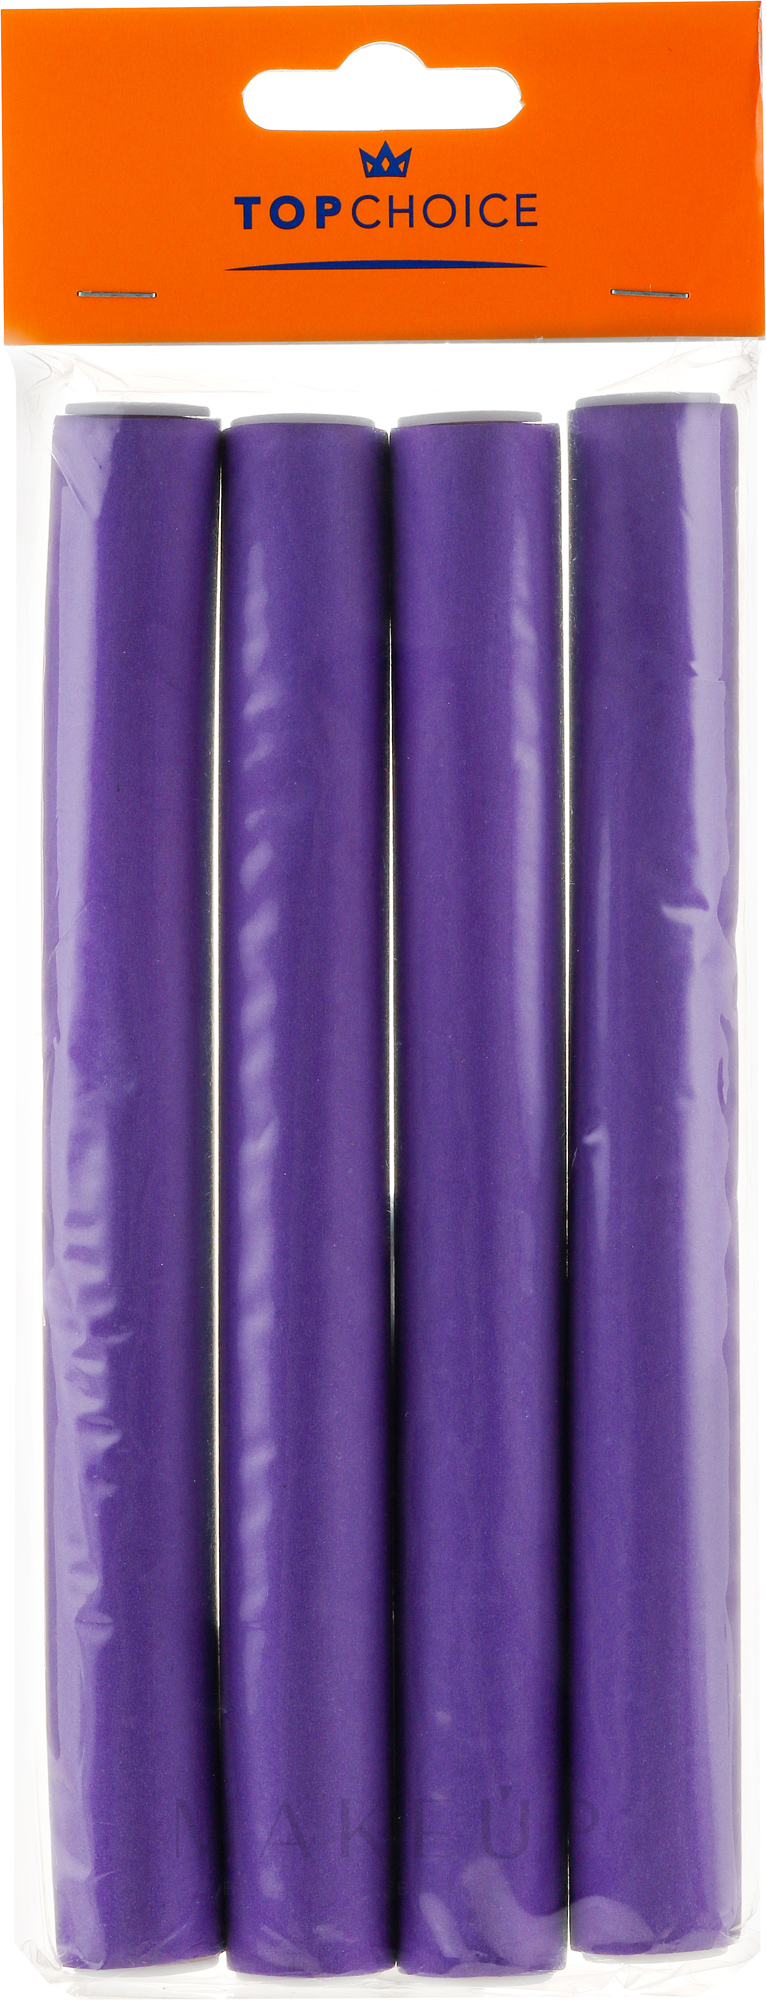 Papilloten XL 4 St. - Top Choice Flex Hair Rods 20mm — Foto 4 St.